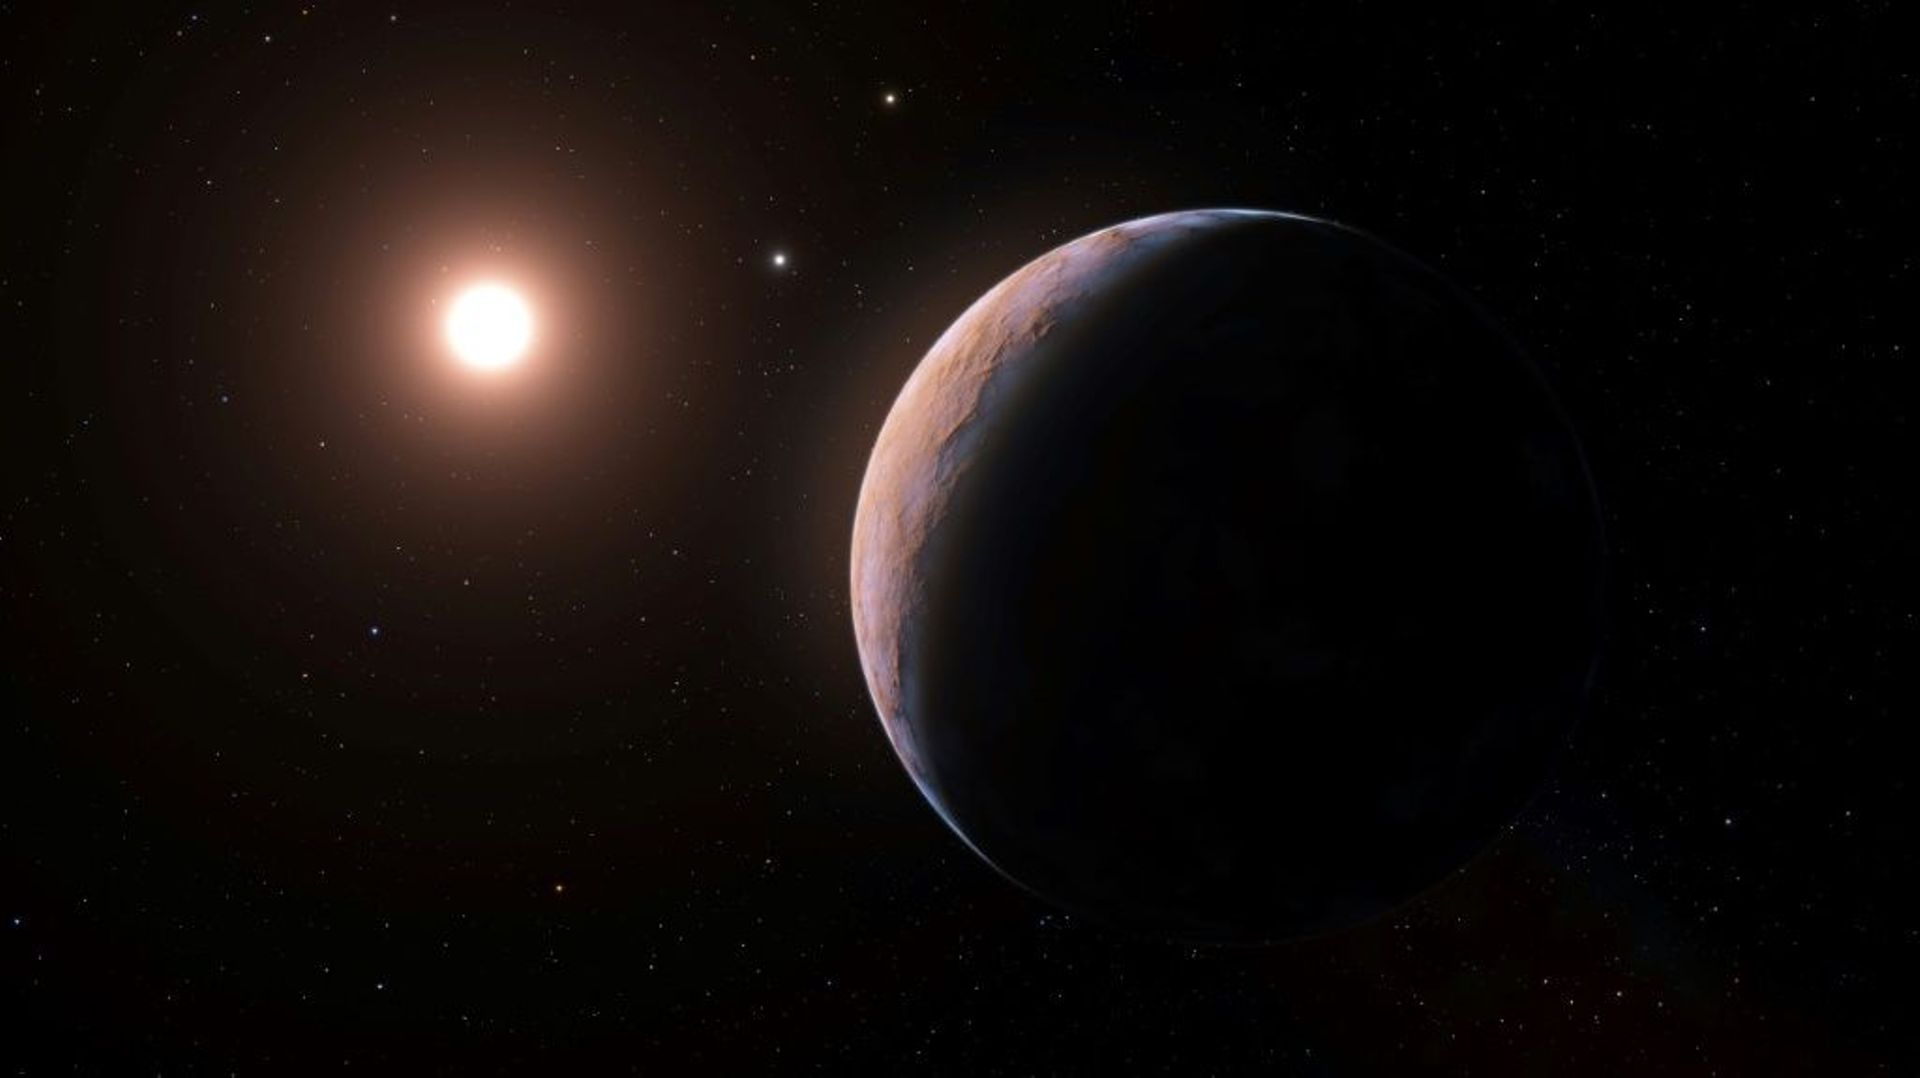 Vue d'artiste de la planète Proxima d, orbitant autour de l'étoile Proxima du Centaure